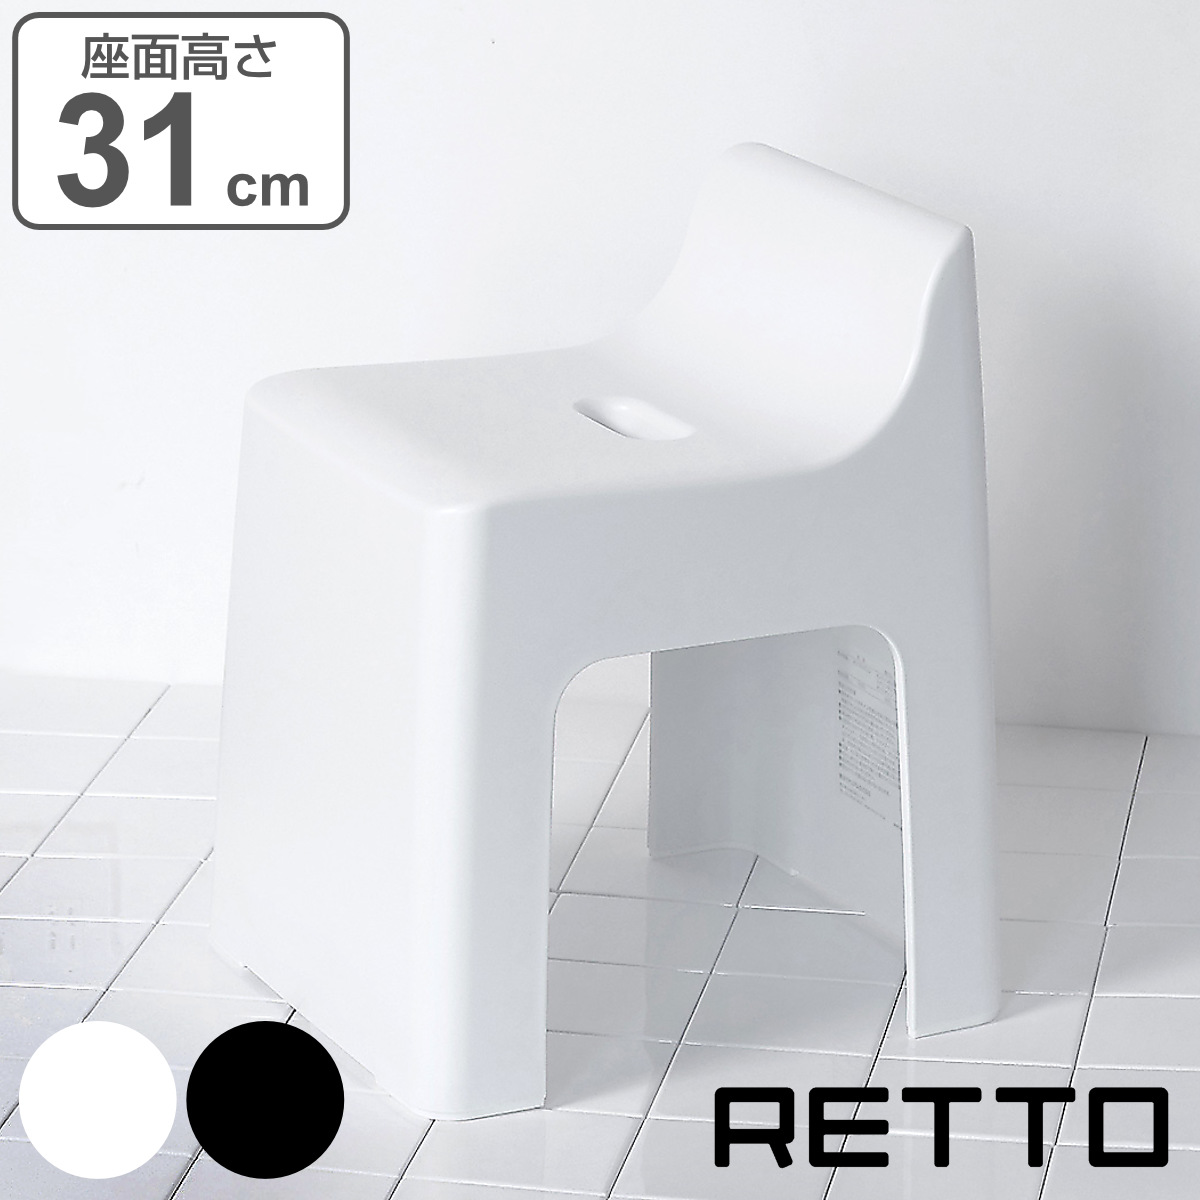 風呂椅子 RETTO レットー ハイチェア 座面高さ 31cm 日本製